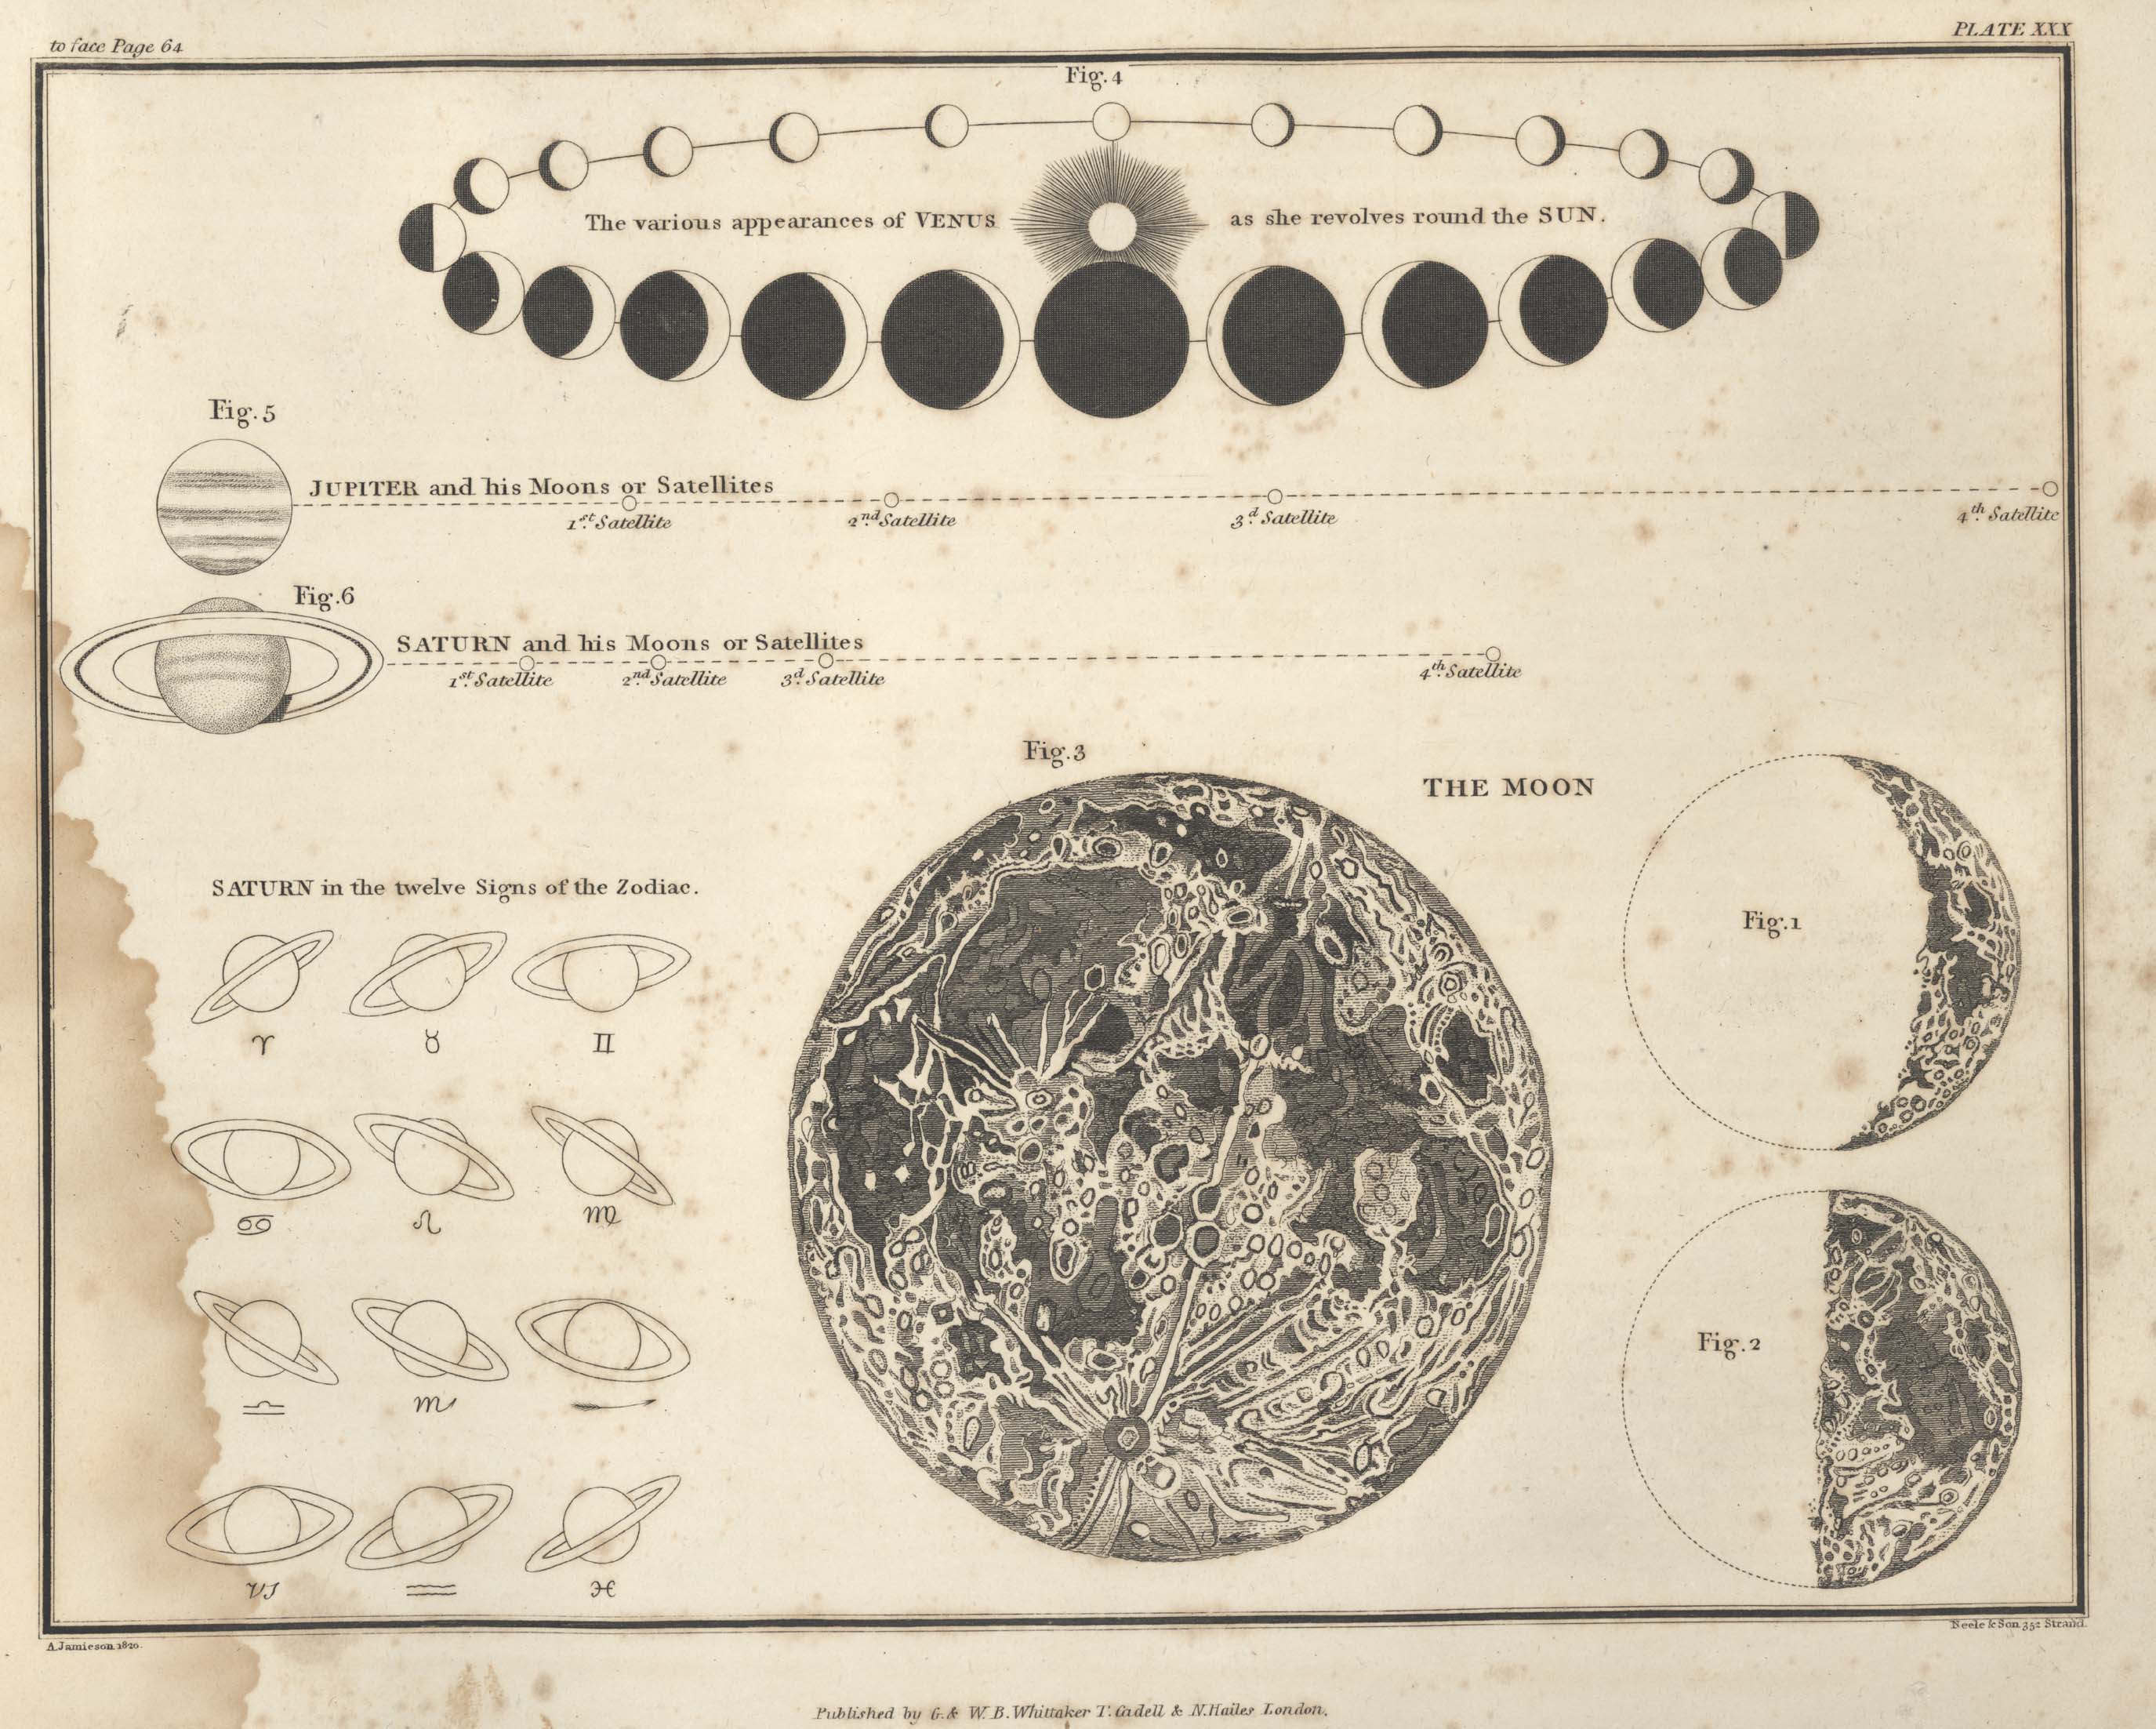 Страница №33: Изображение Луны, Фазы Венеры, изображения Юпитера (с галилеевыми спутниками) и Сатурна